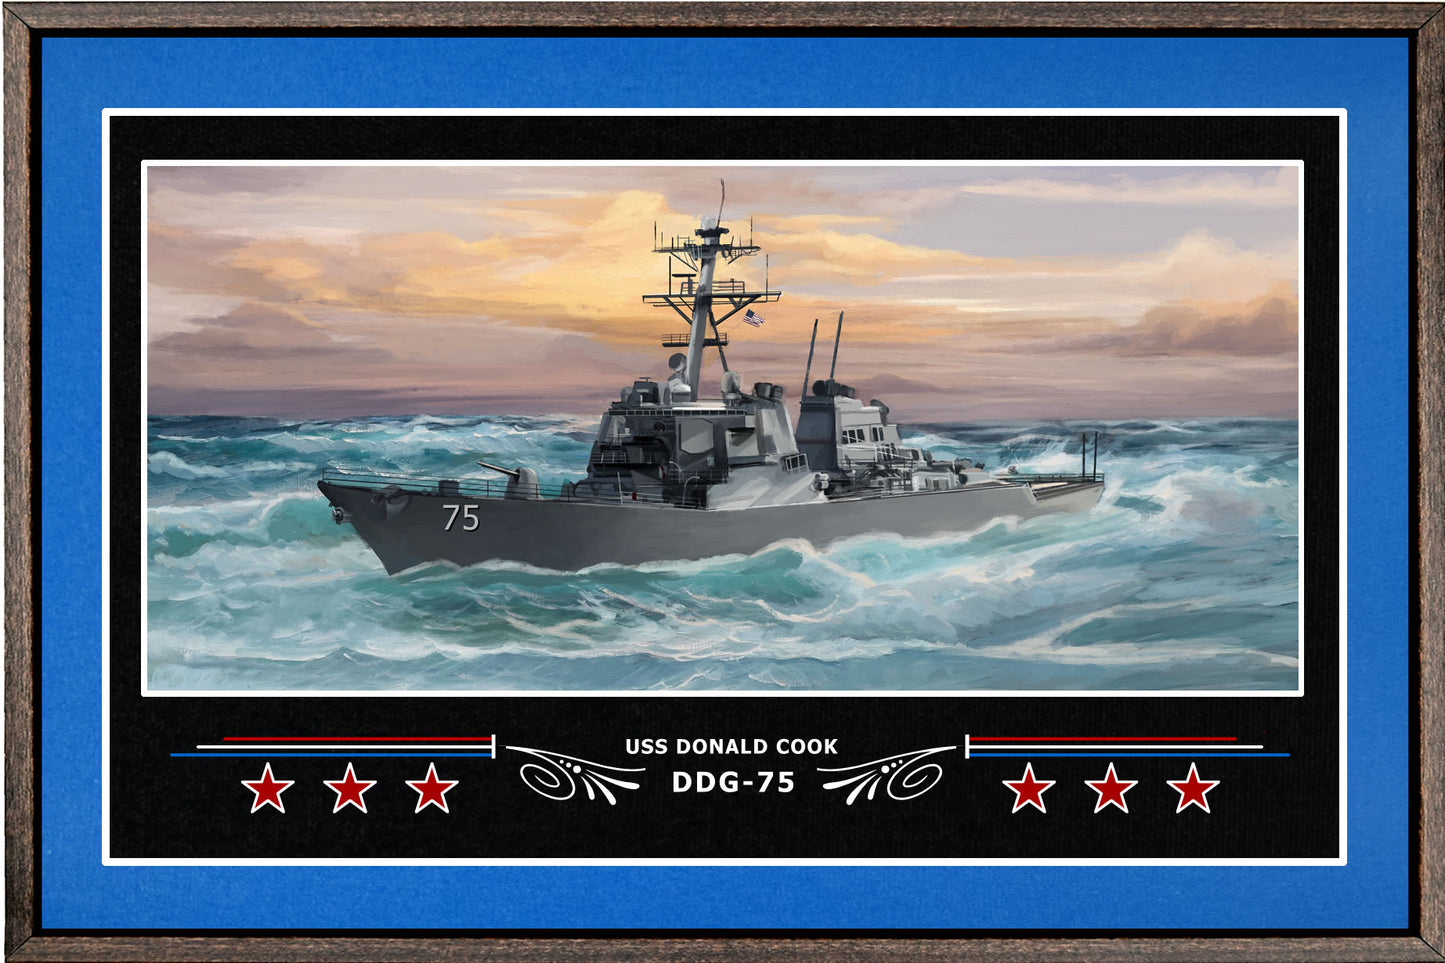 USS DONALD COOK DDG 75 BOX FRAMED CANVAS ART BLUE